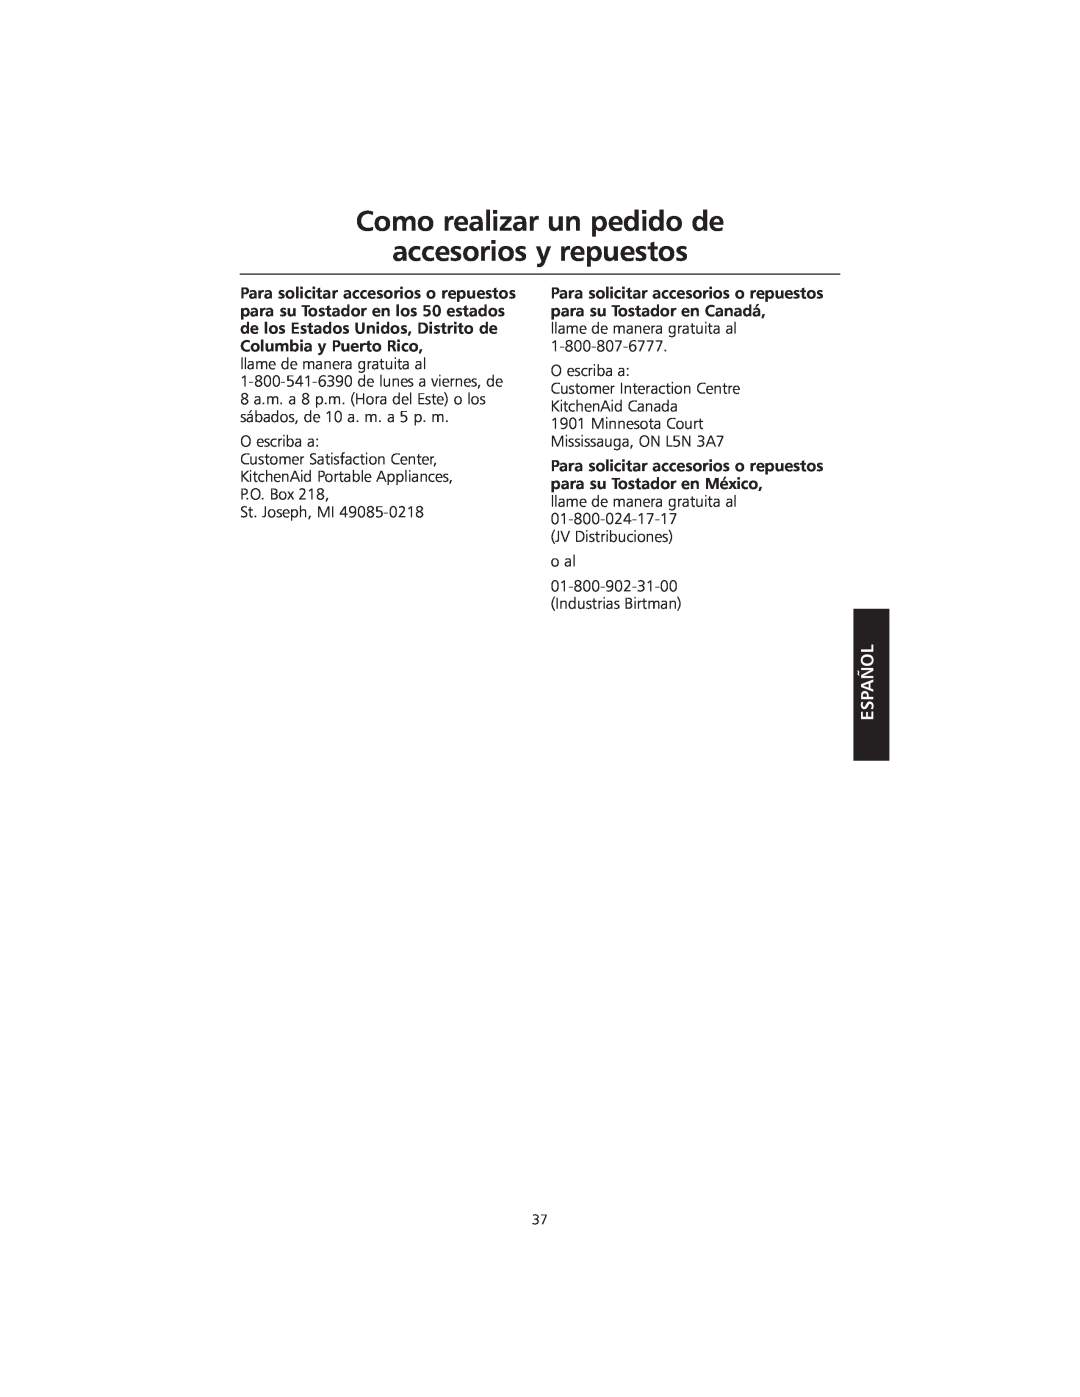 KitchenAid KMTT200 manual Como realizar un pedido de accesorios y repuestos, Español 